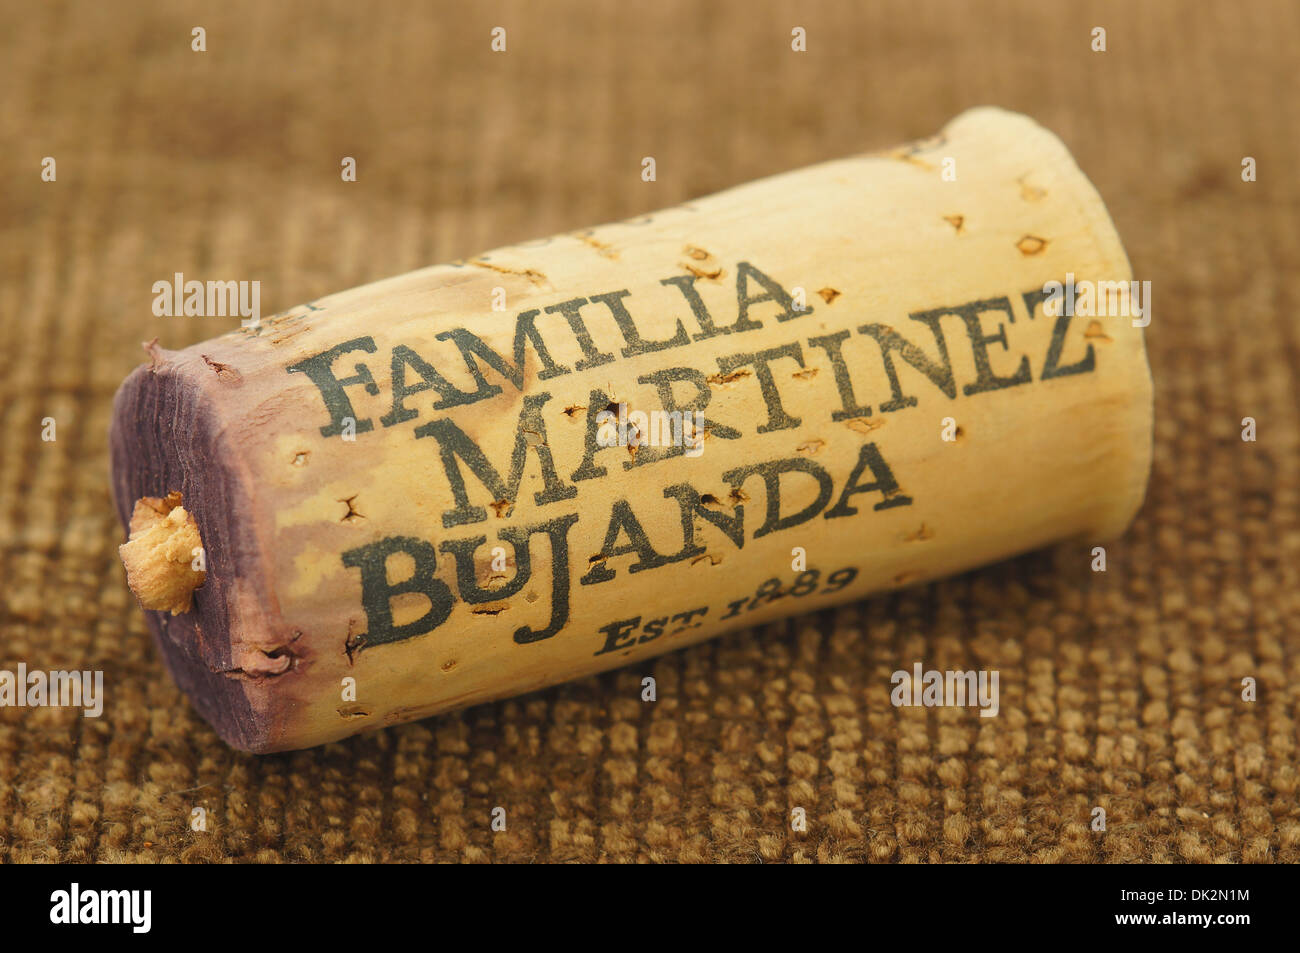 Familia martinez Bujanda winemakers Rioja spanish wine cork stopper Stock Photo